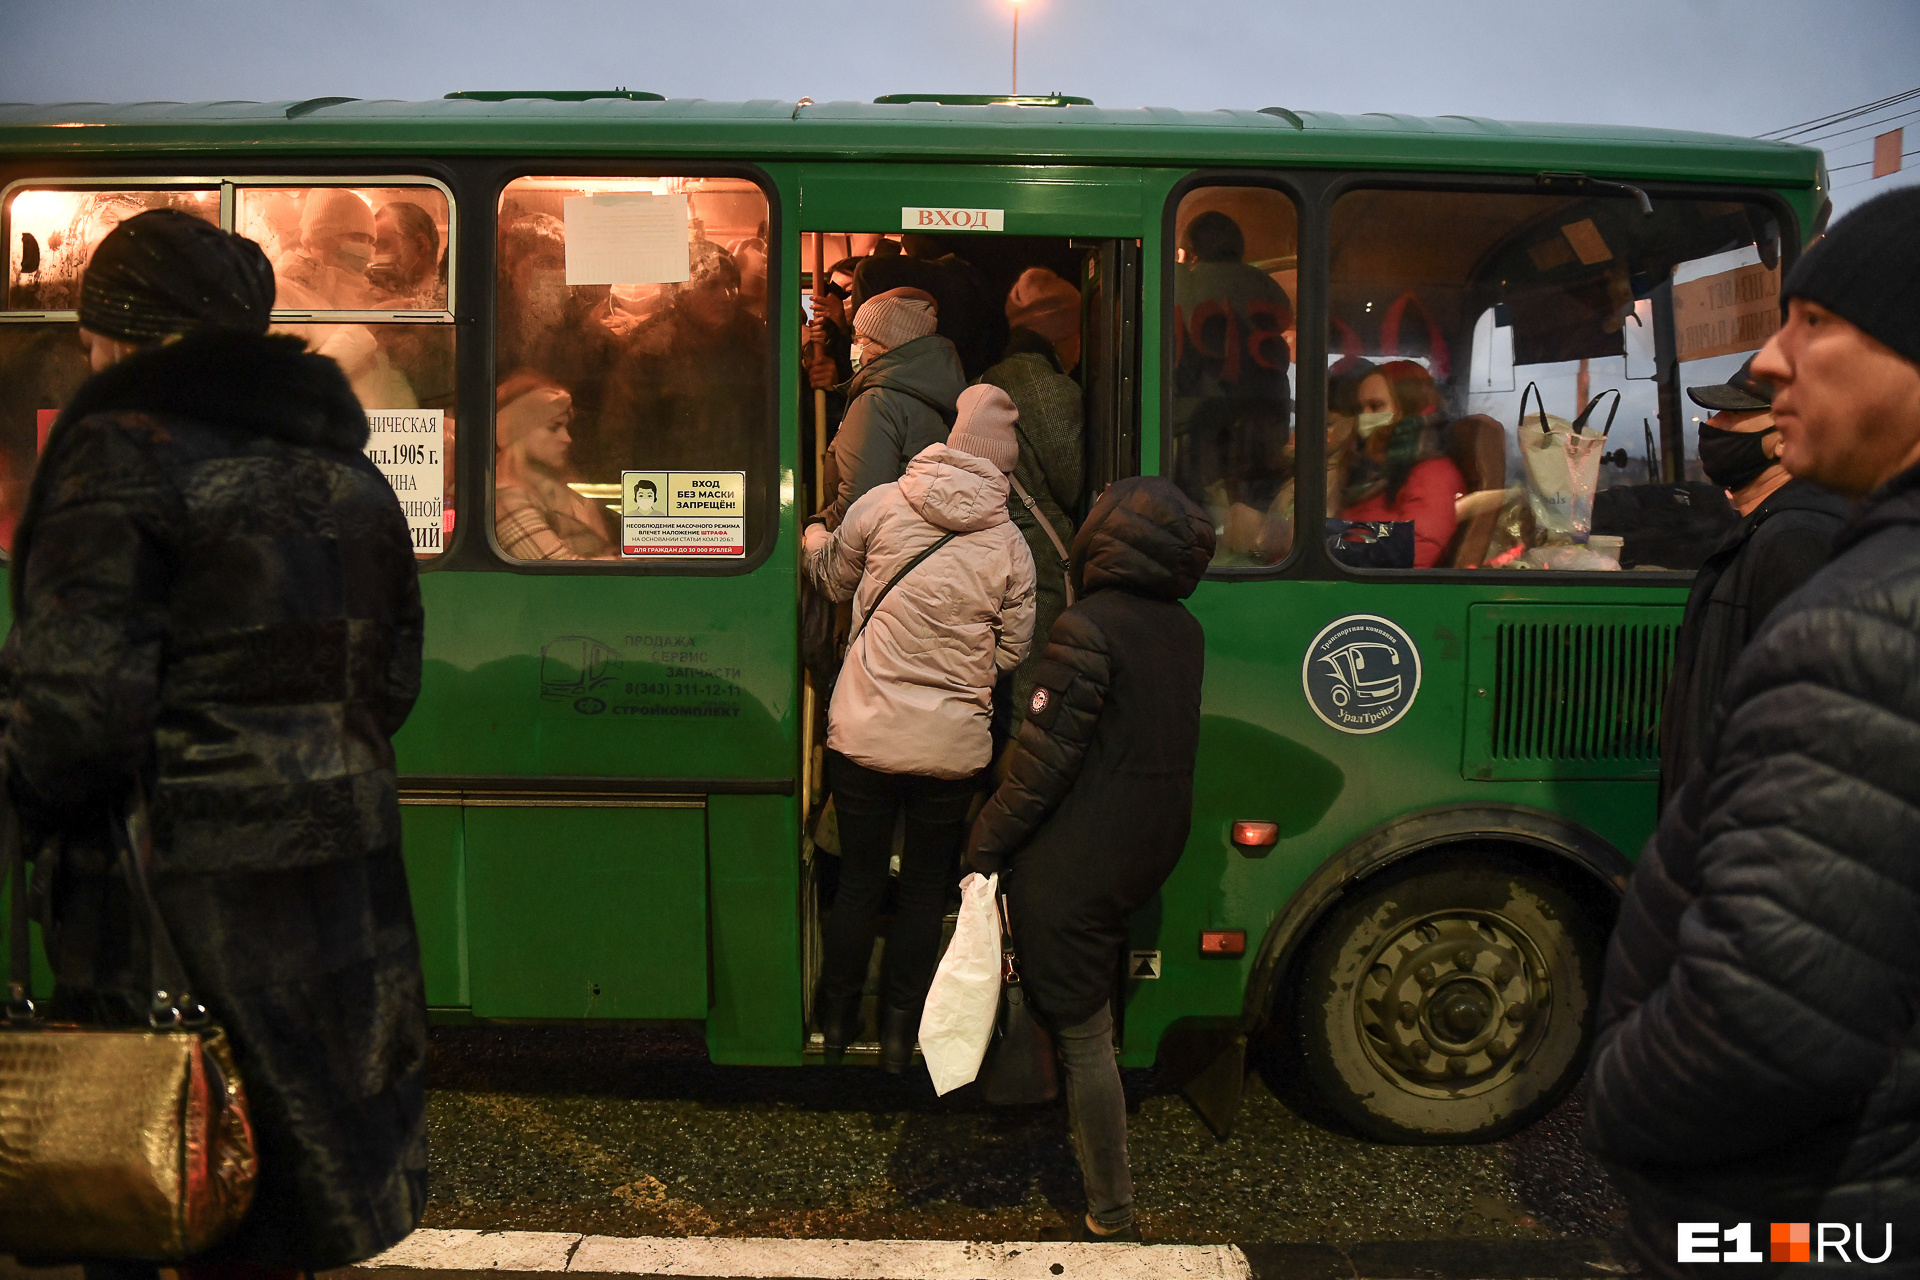 Надо потерпеть: губернатор объяснил проблемы с общественным транспортом в Екатеринбурге